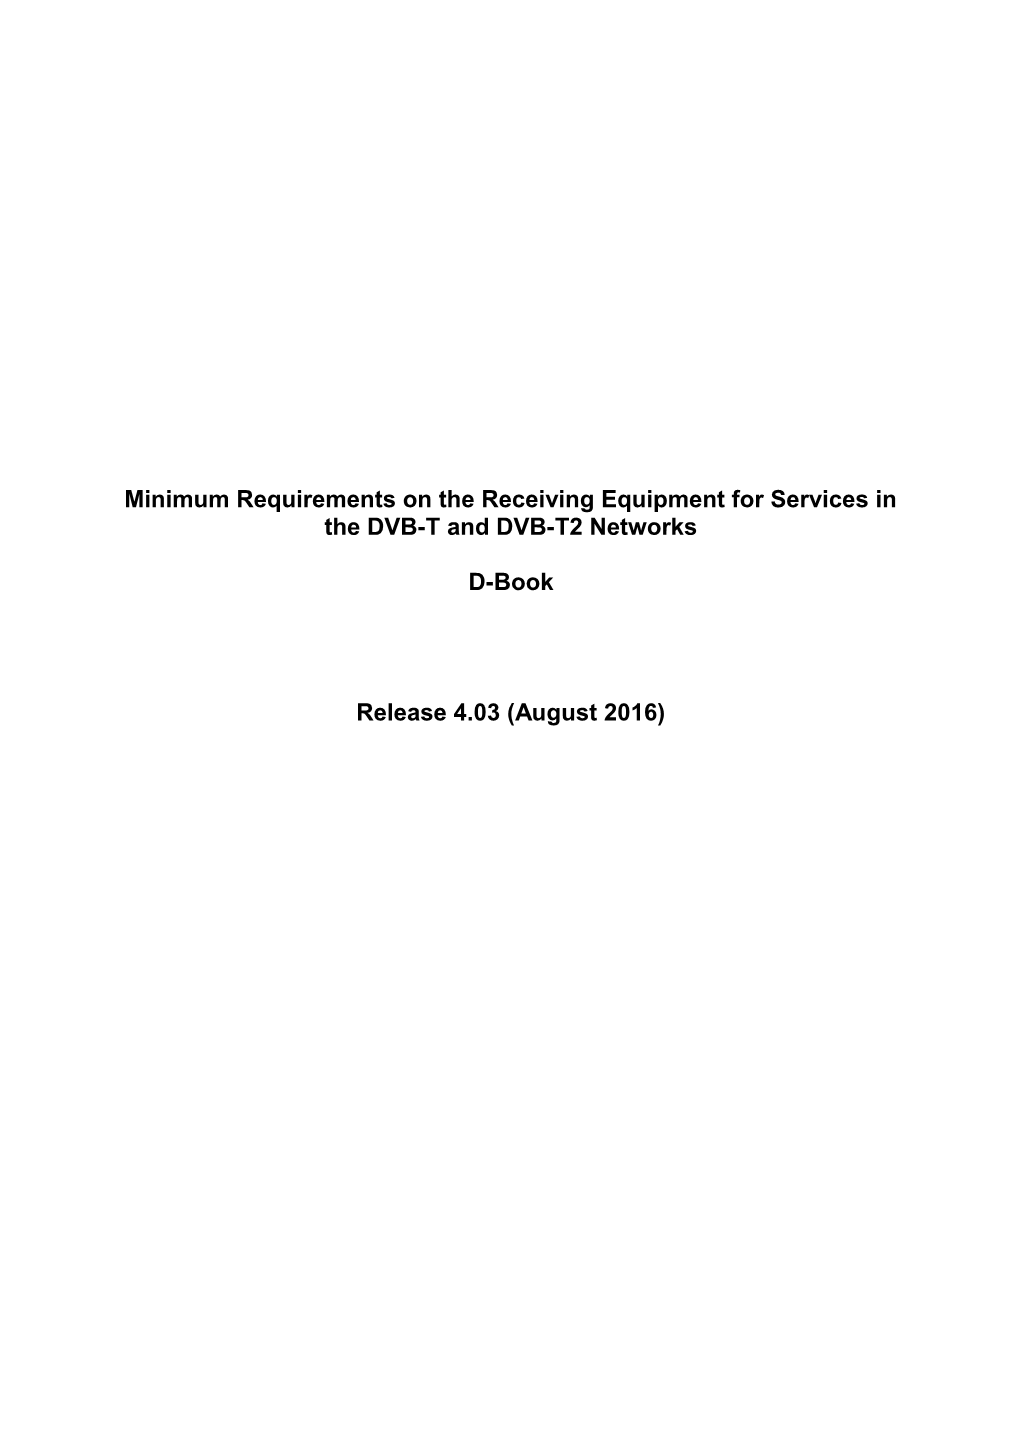 Minimální Požadavky Na Přijímací Zařízení Pro Poskytování Služeb V Sítích DVB-T a DVB-T2